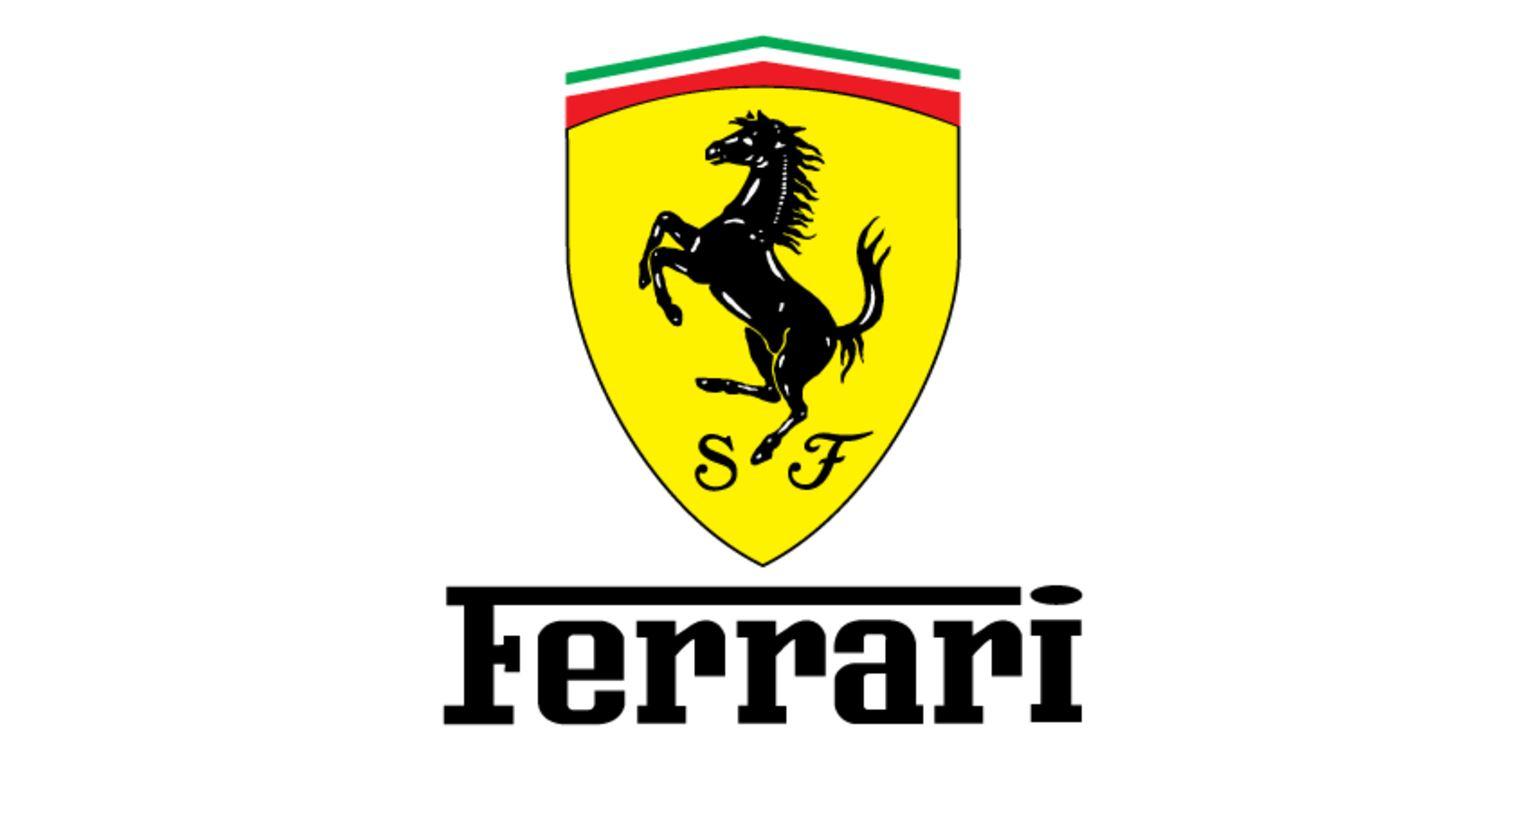 Ferrari 2017 Logo - Download Ferrari vector logo (.EPS + .AI + .CDR) - Seeklogo.net